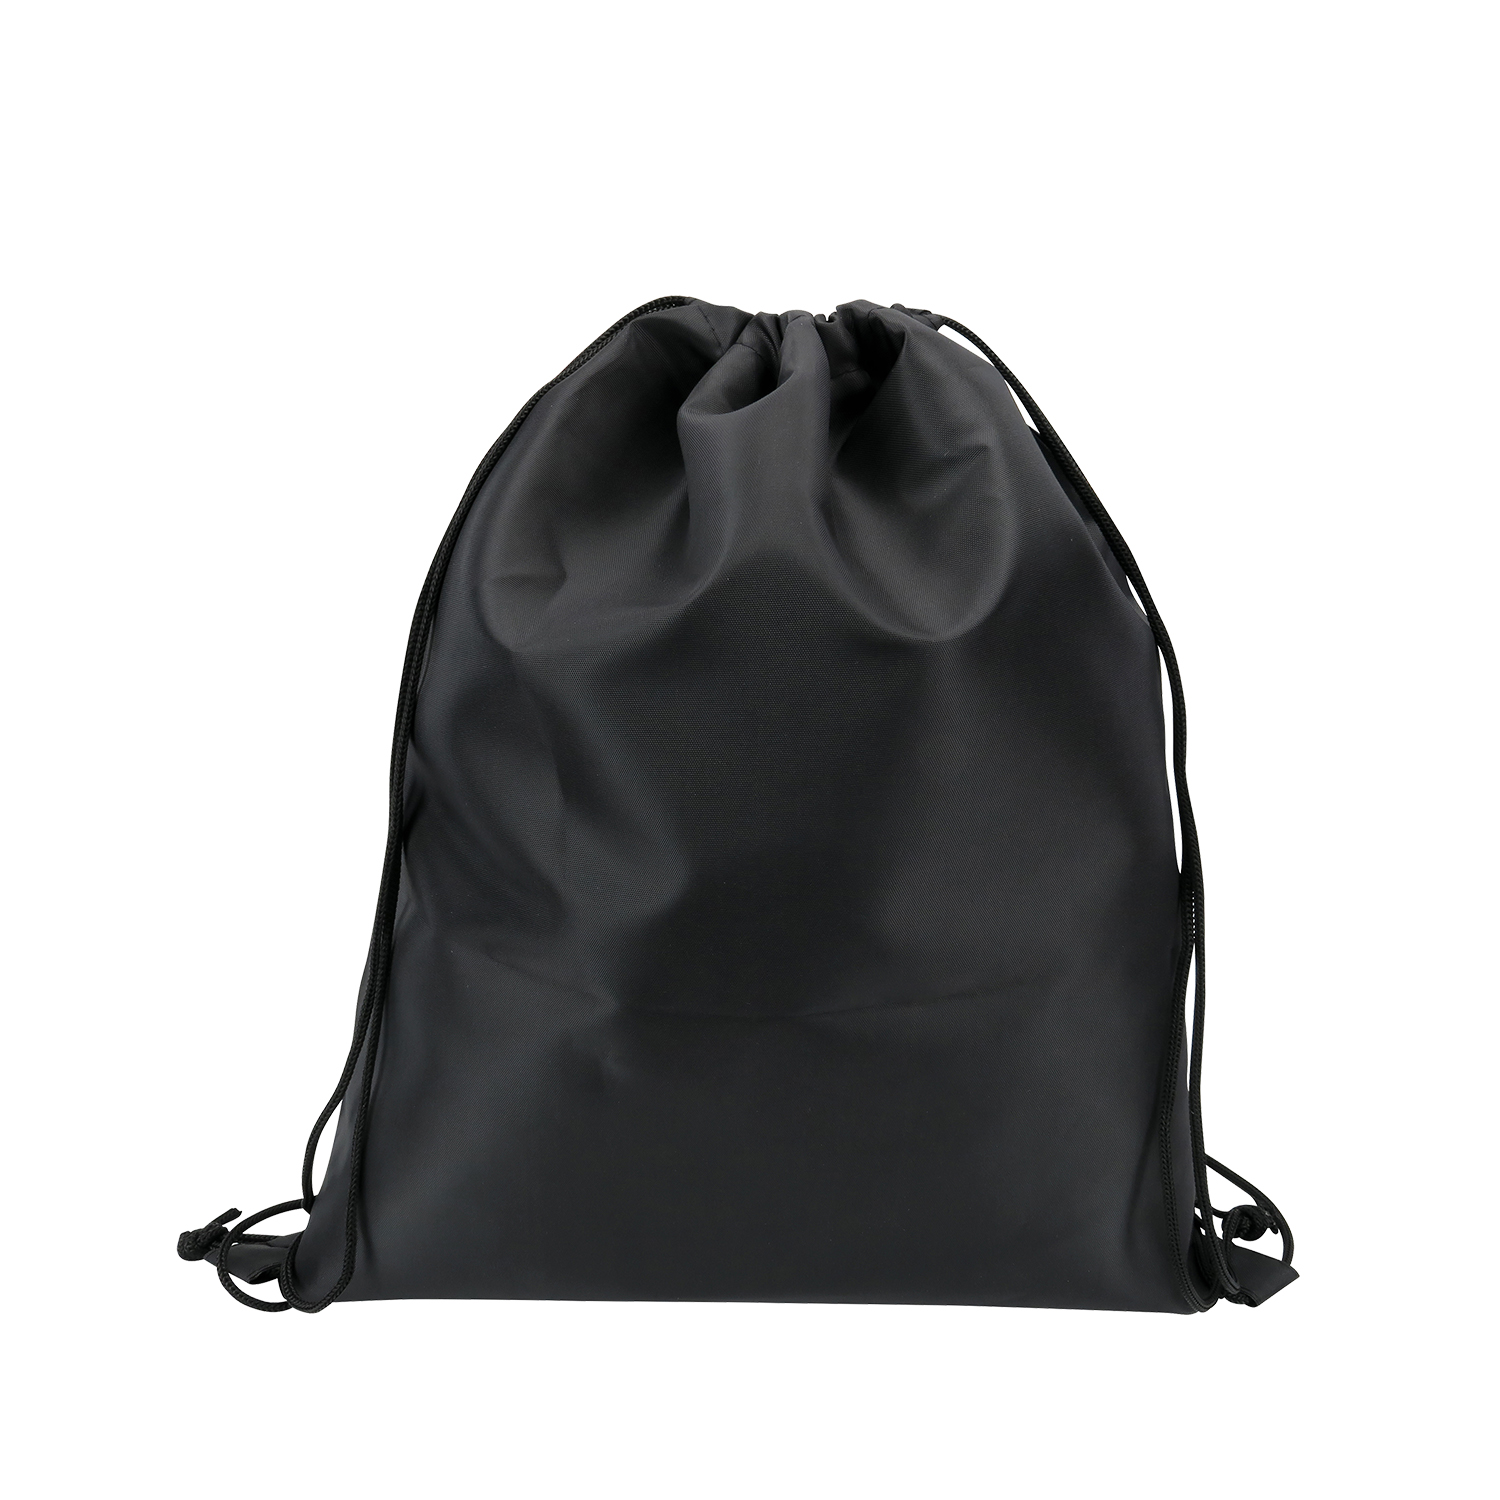 Nylon Drawstring Bag - Gift Idea